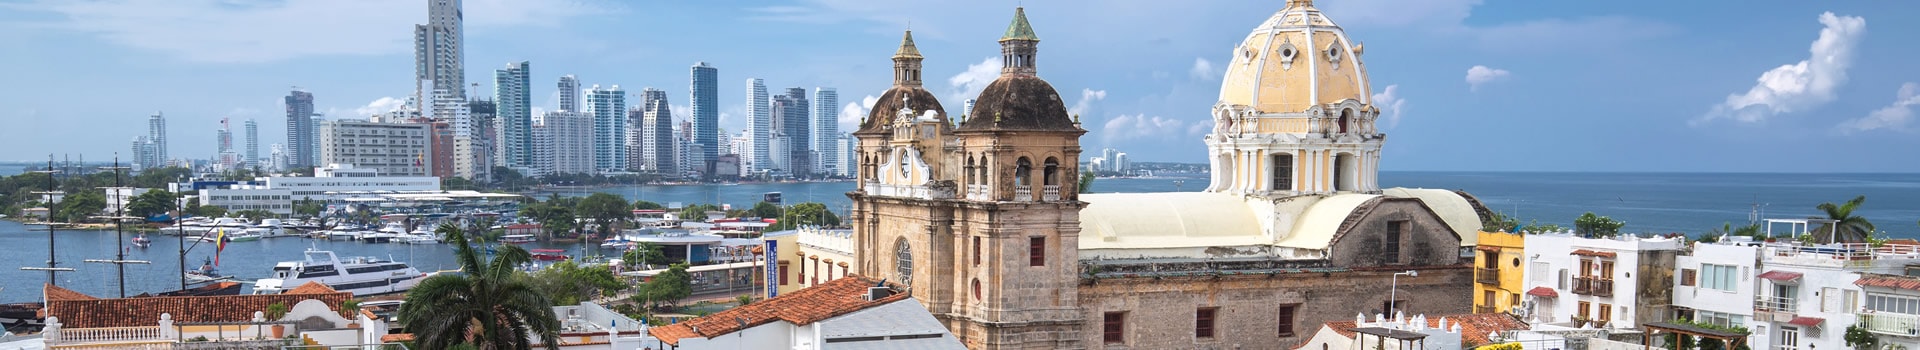 Buenos aires - Cartagena de indias